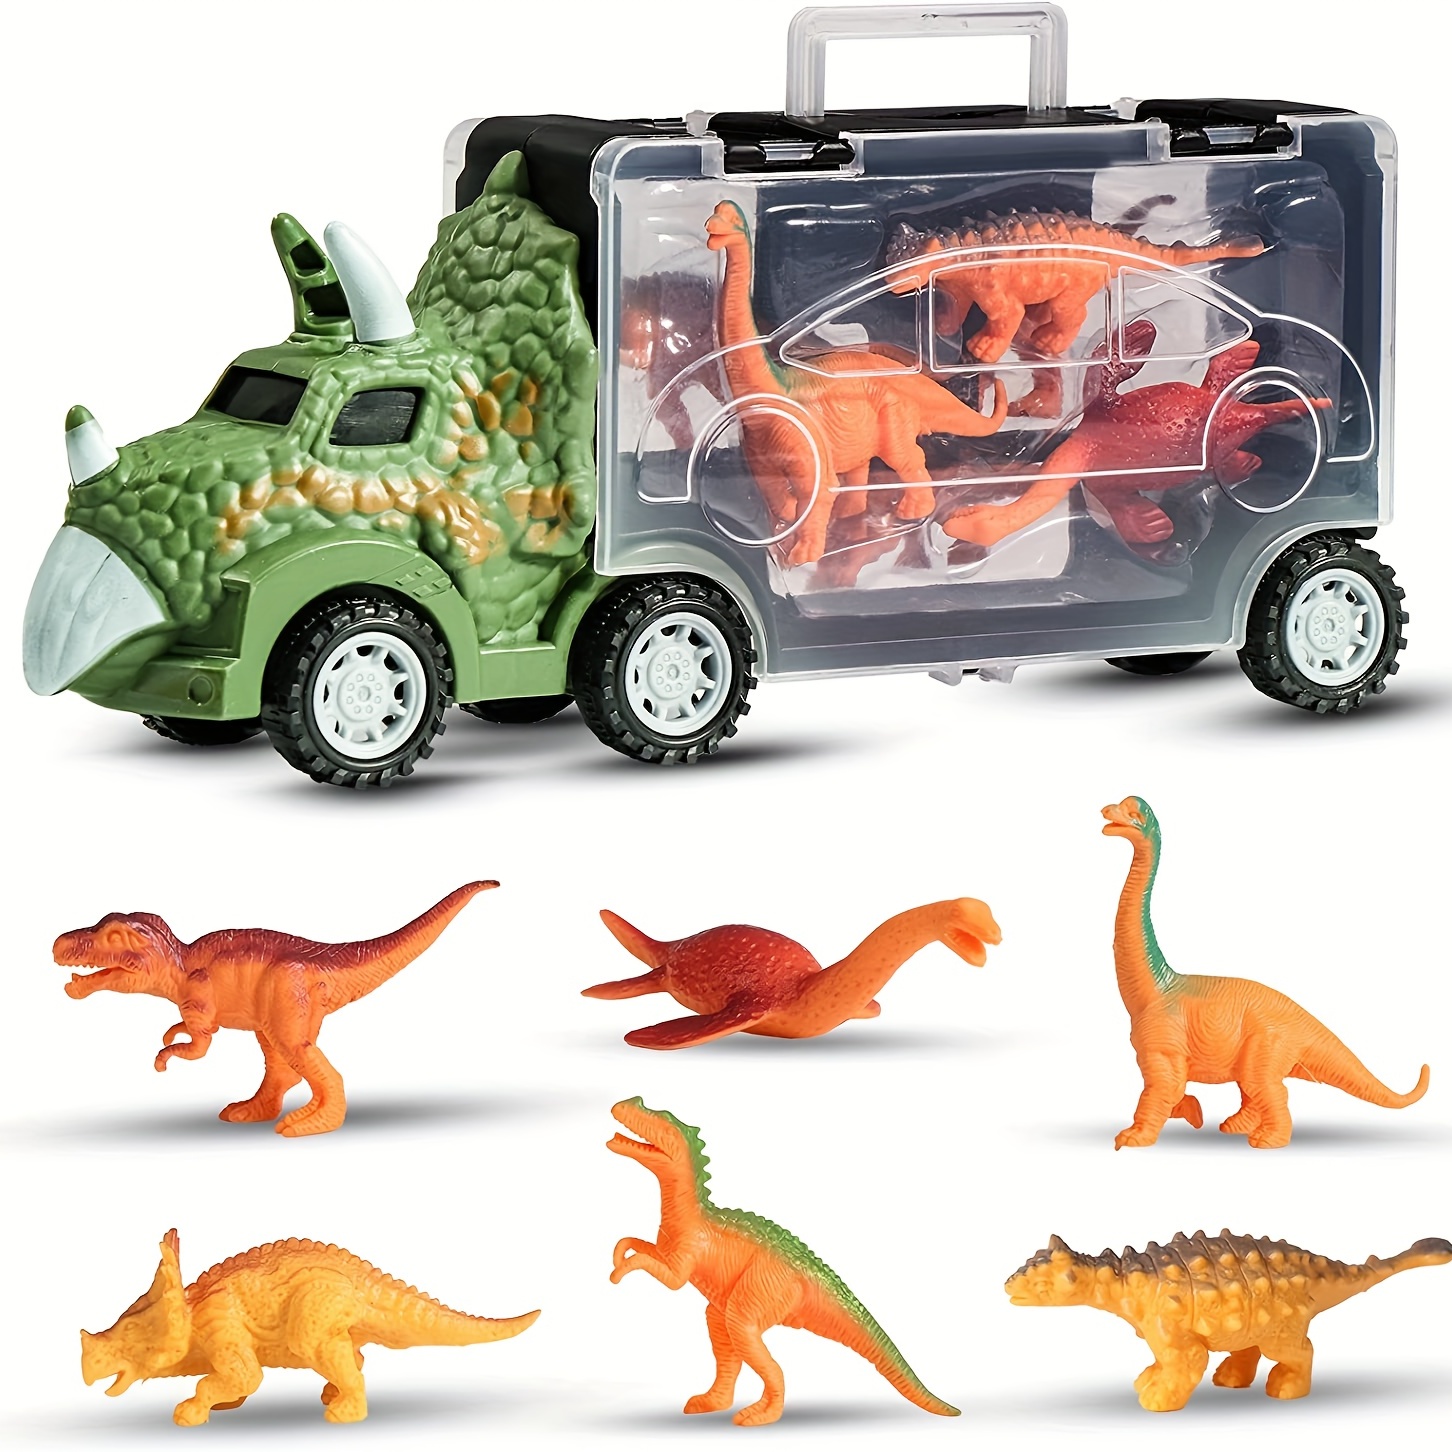  DINOBROS Coches de juguete de dinosaurio, paquete de 6 juguetes  de dinosaurio para niños y niñas de 3 años, juguetes para niños de 3, 4, 5  años en adelante, autos de